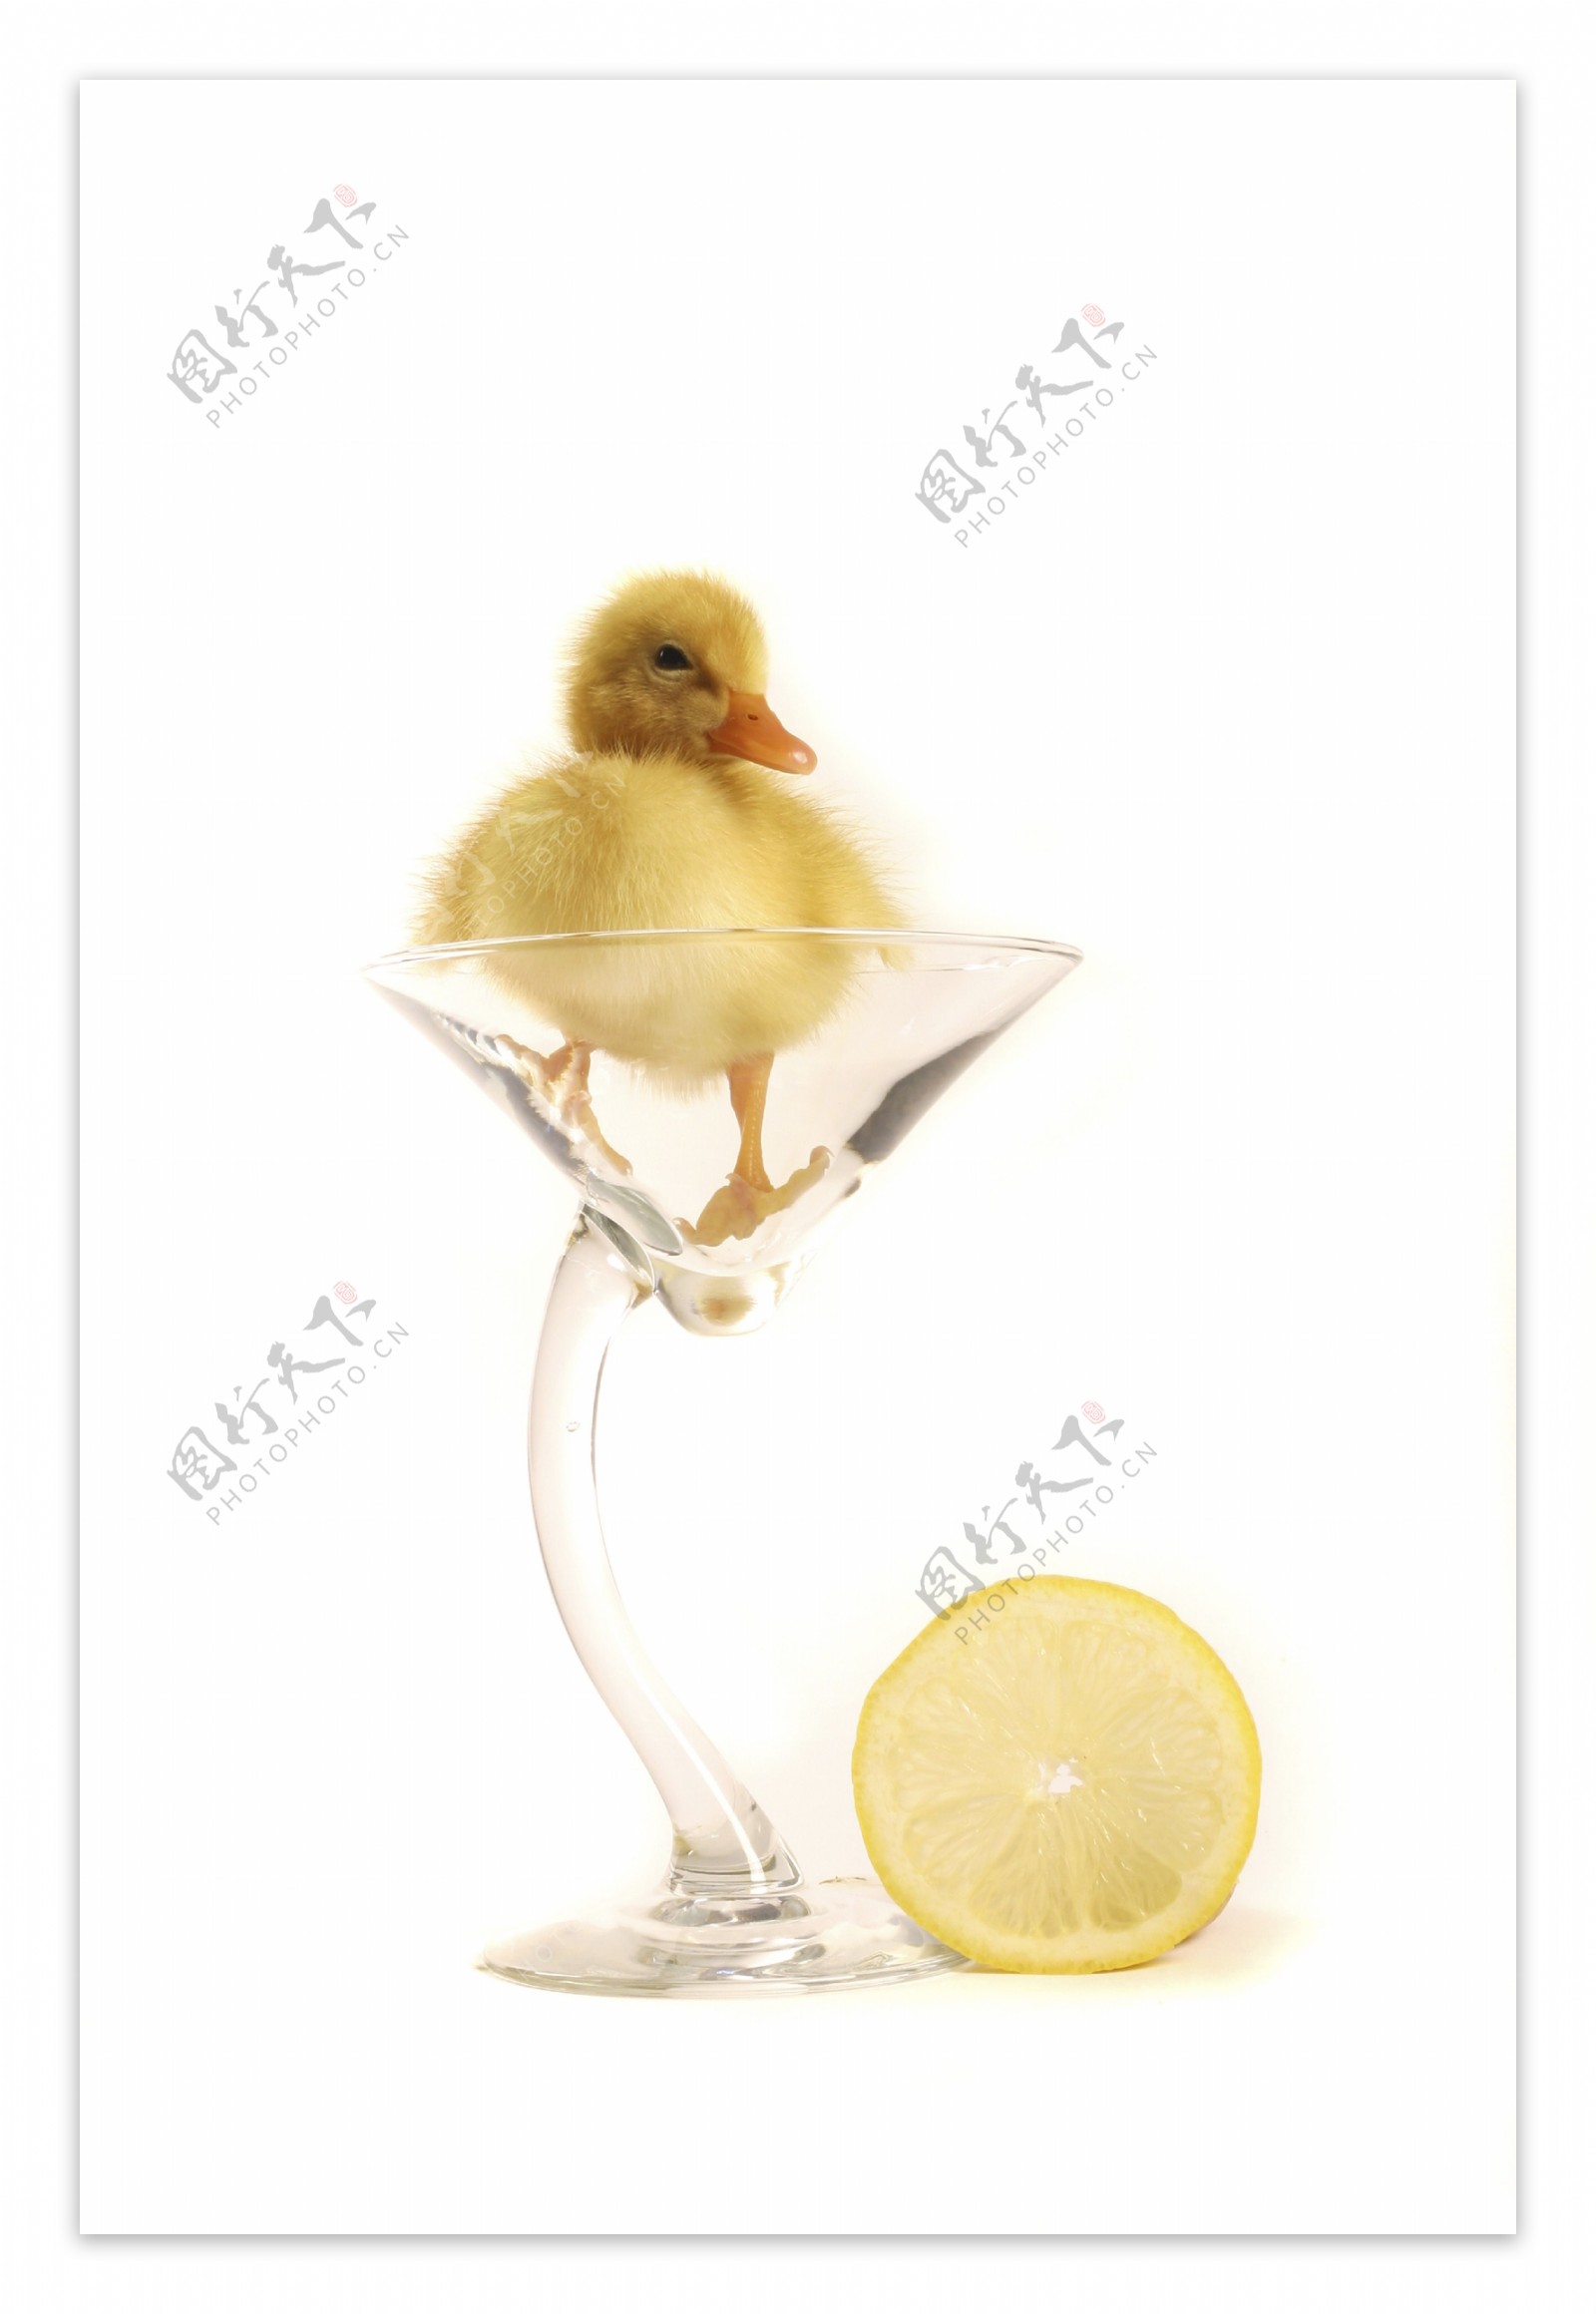 装在杯子里的小鸭子图片